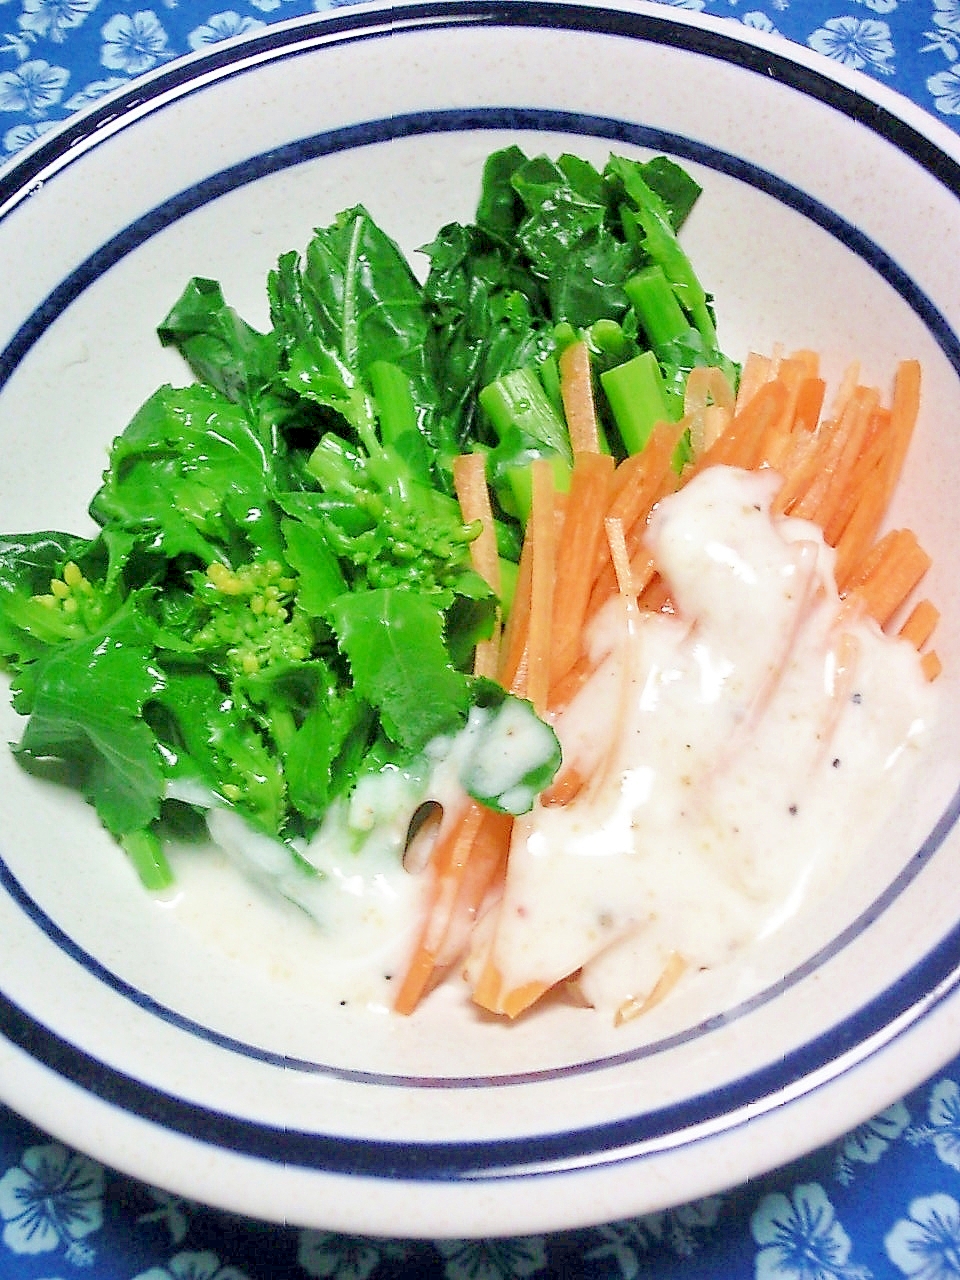 のらぼう菜、にんじんの塩ドレヨーグルトサラダ